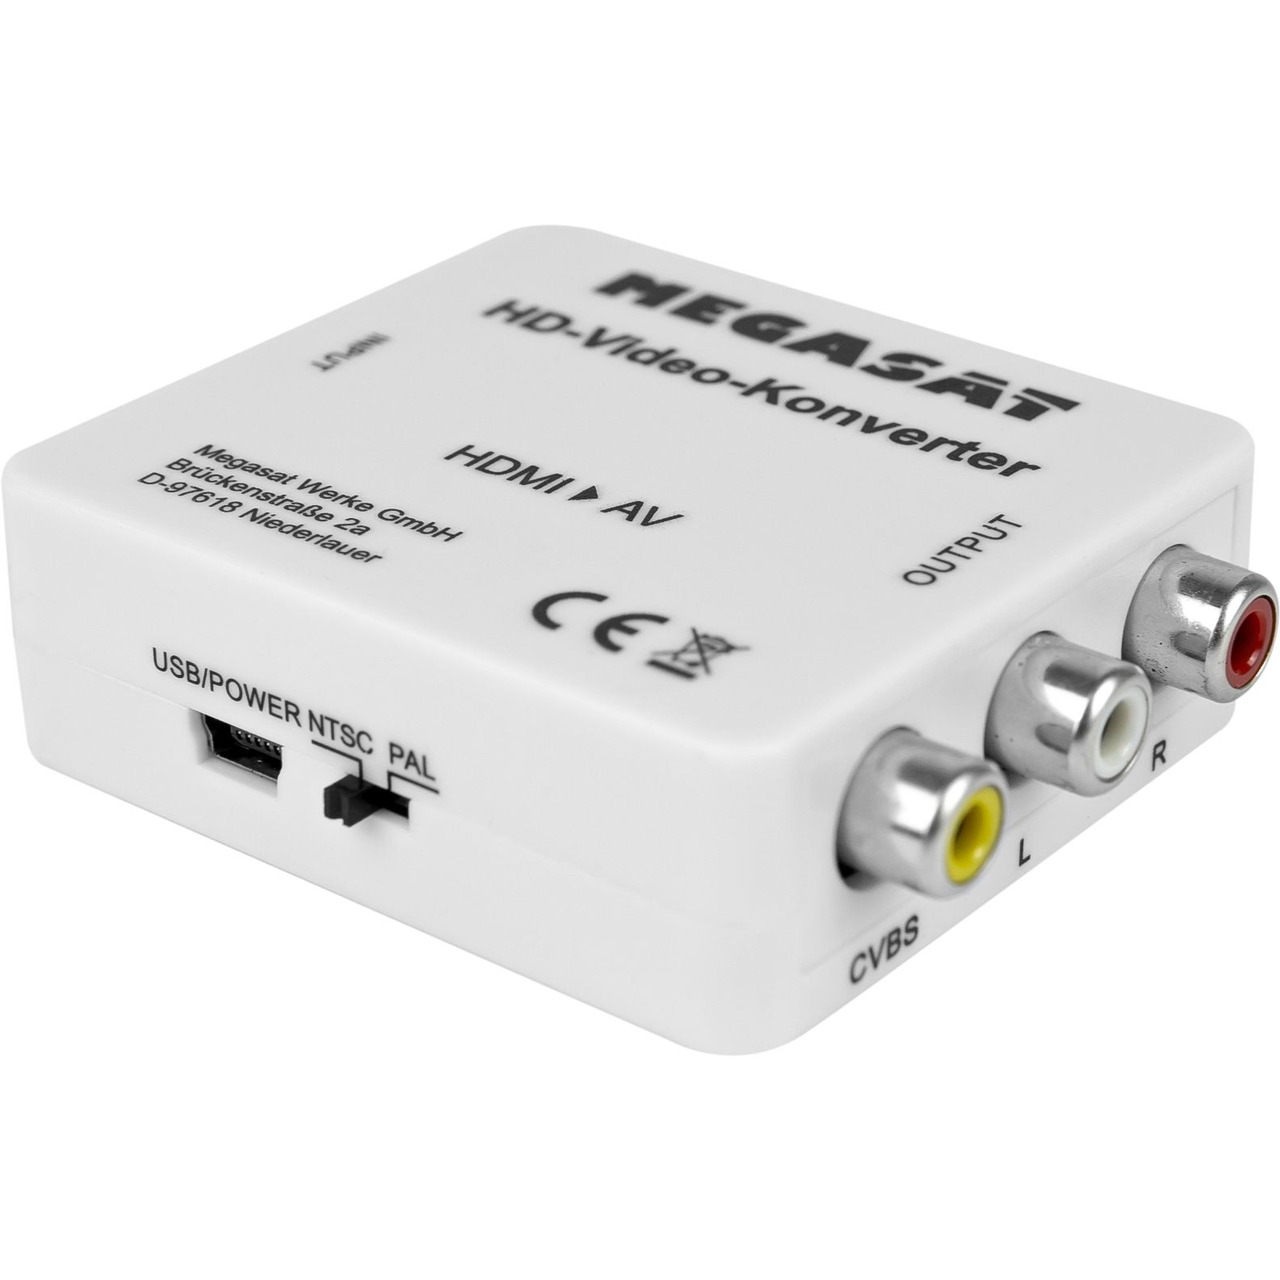 Megasat HDMI-zu-AV-Konverter- Plug und Play- HDMI 1-3- HDMI-AV-Adapter- PAL-NTSC unter Multimedia